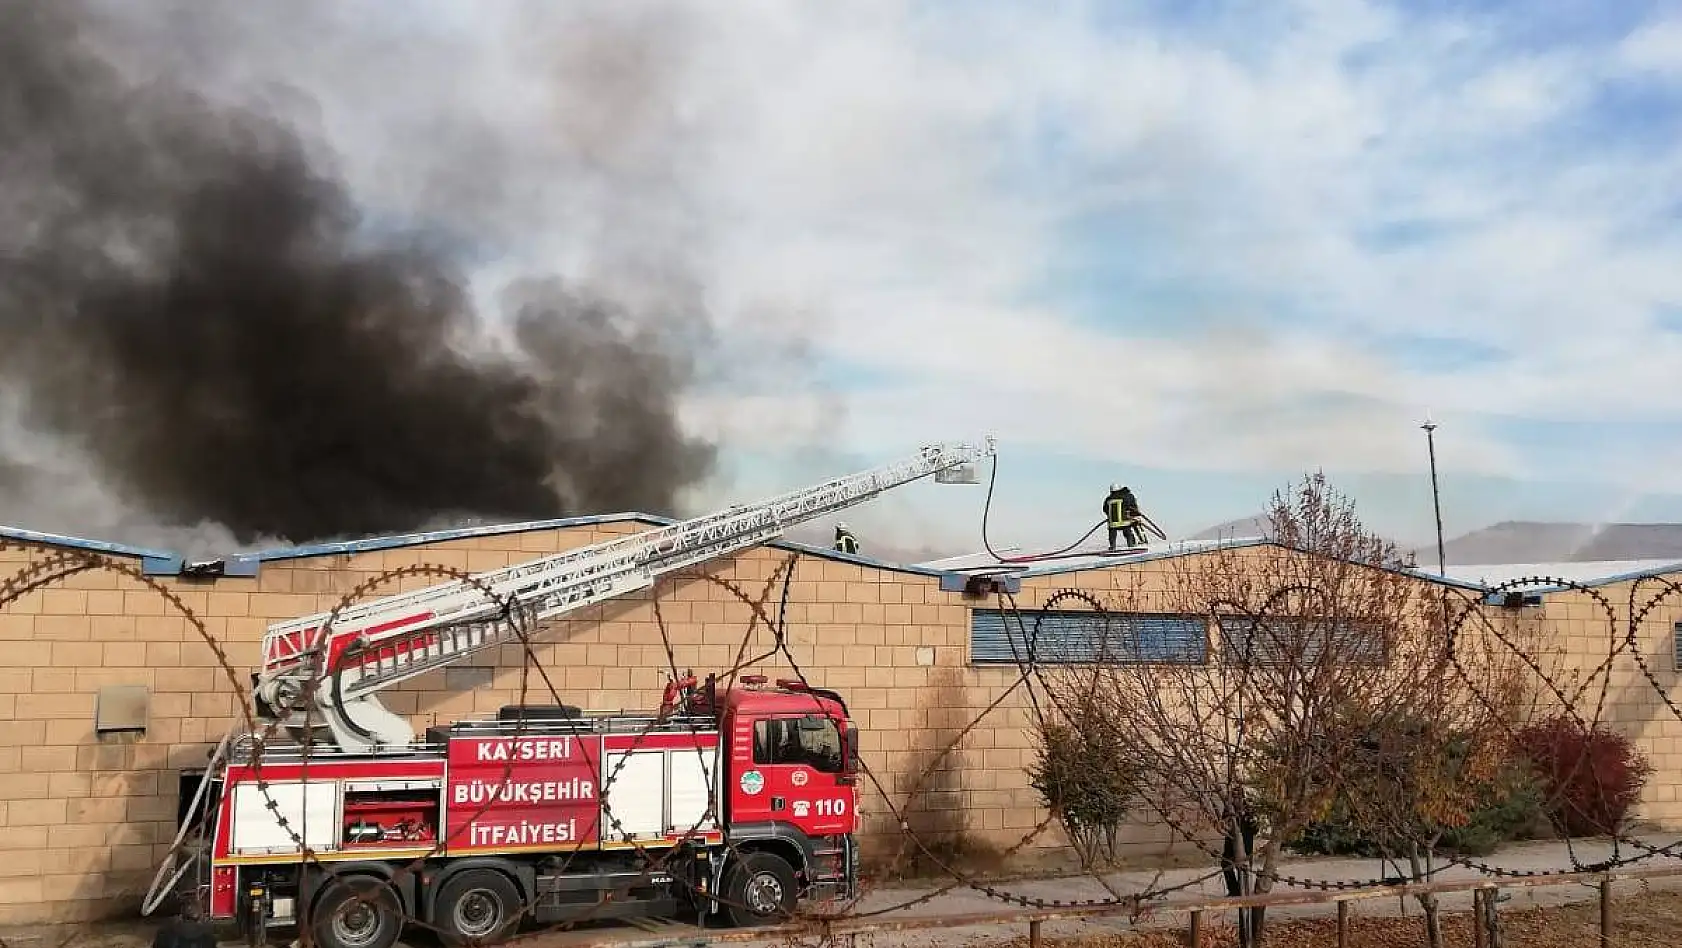 Kayseri'de tekstil fabrikasında yangın
